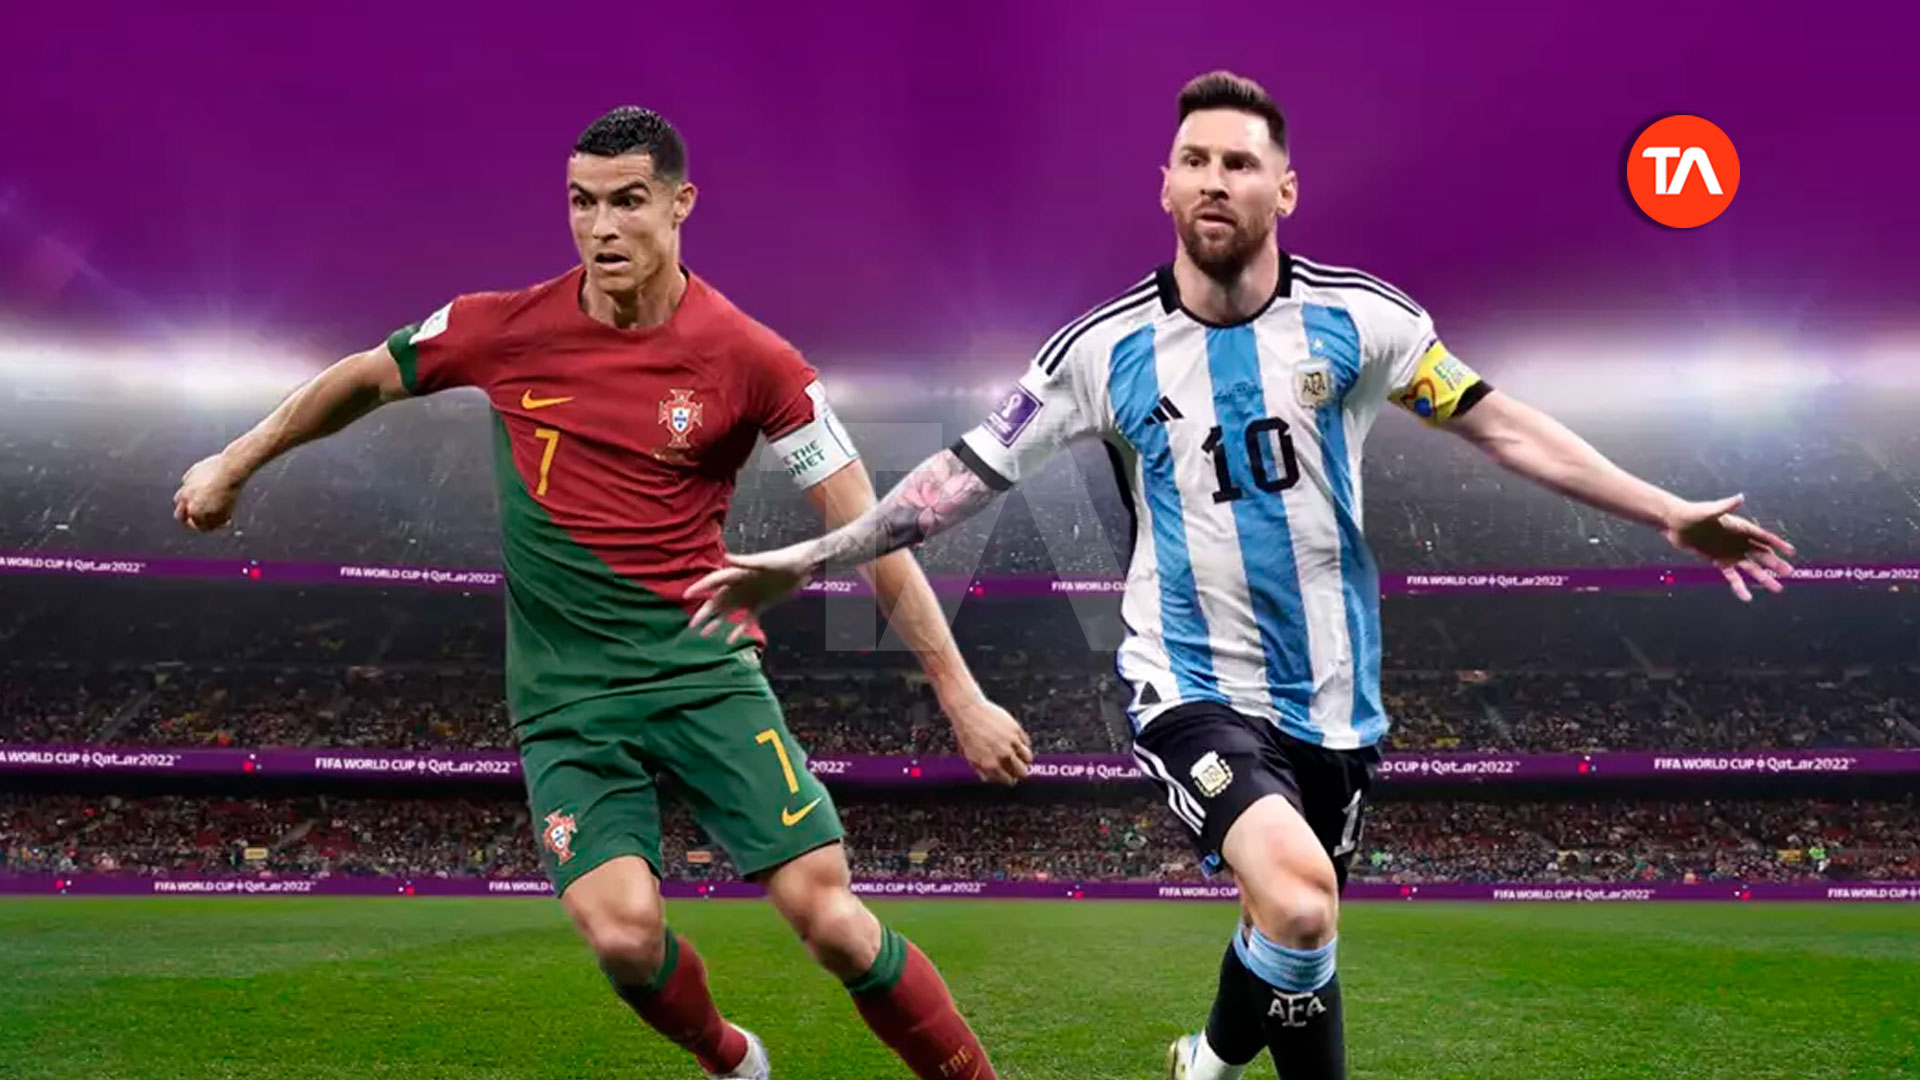 Poderia haver uma final entre Lionel Messi e Cristiano Ronaldo?